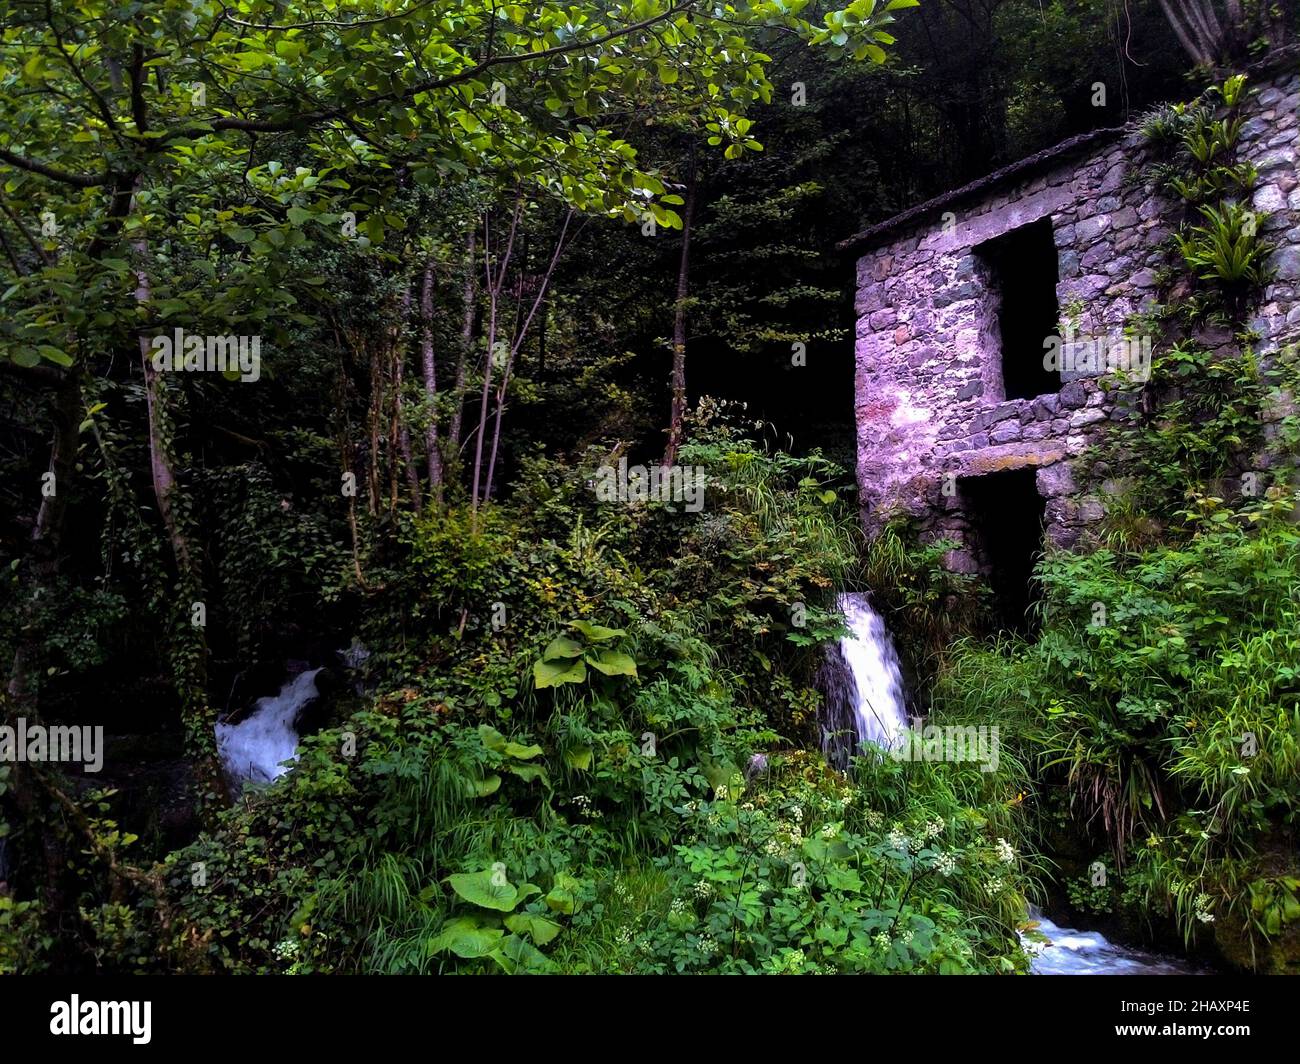 Ancien moulin à eau en pierre dans la forêt, entouré d'arbres verts Banque D'Images